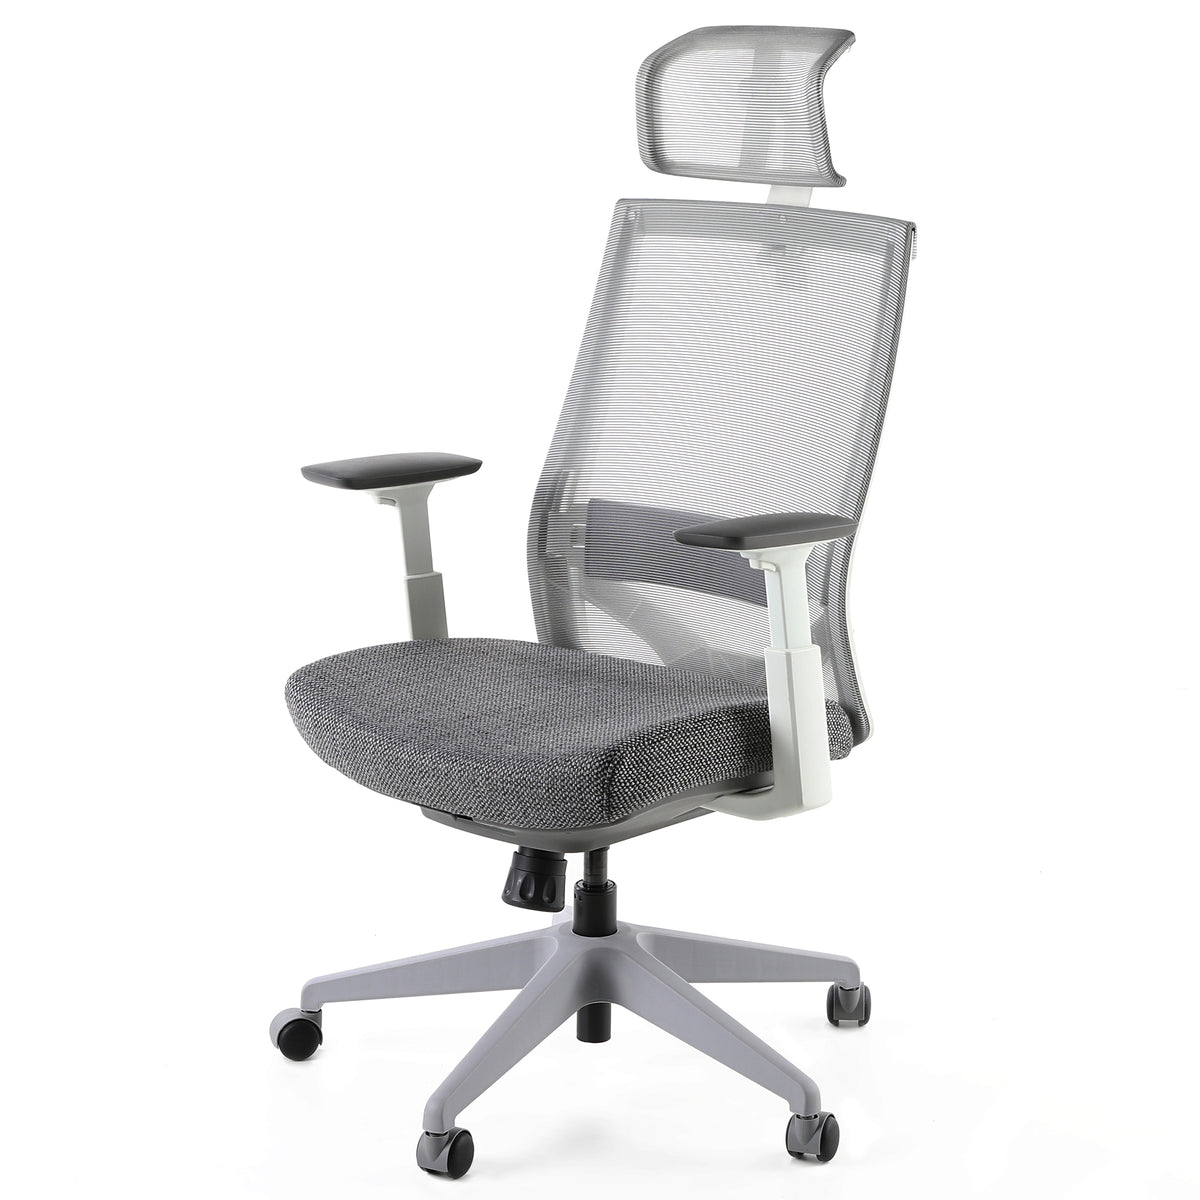 Кресло Ergonomic Gray. Инновационное кресло MPOSITION.